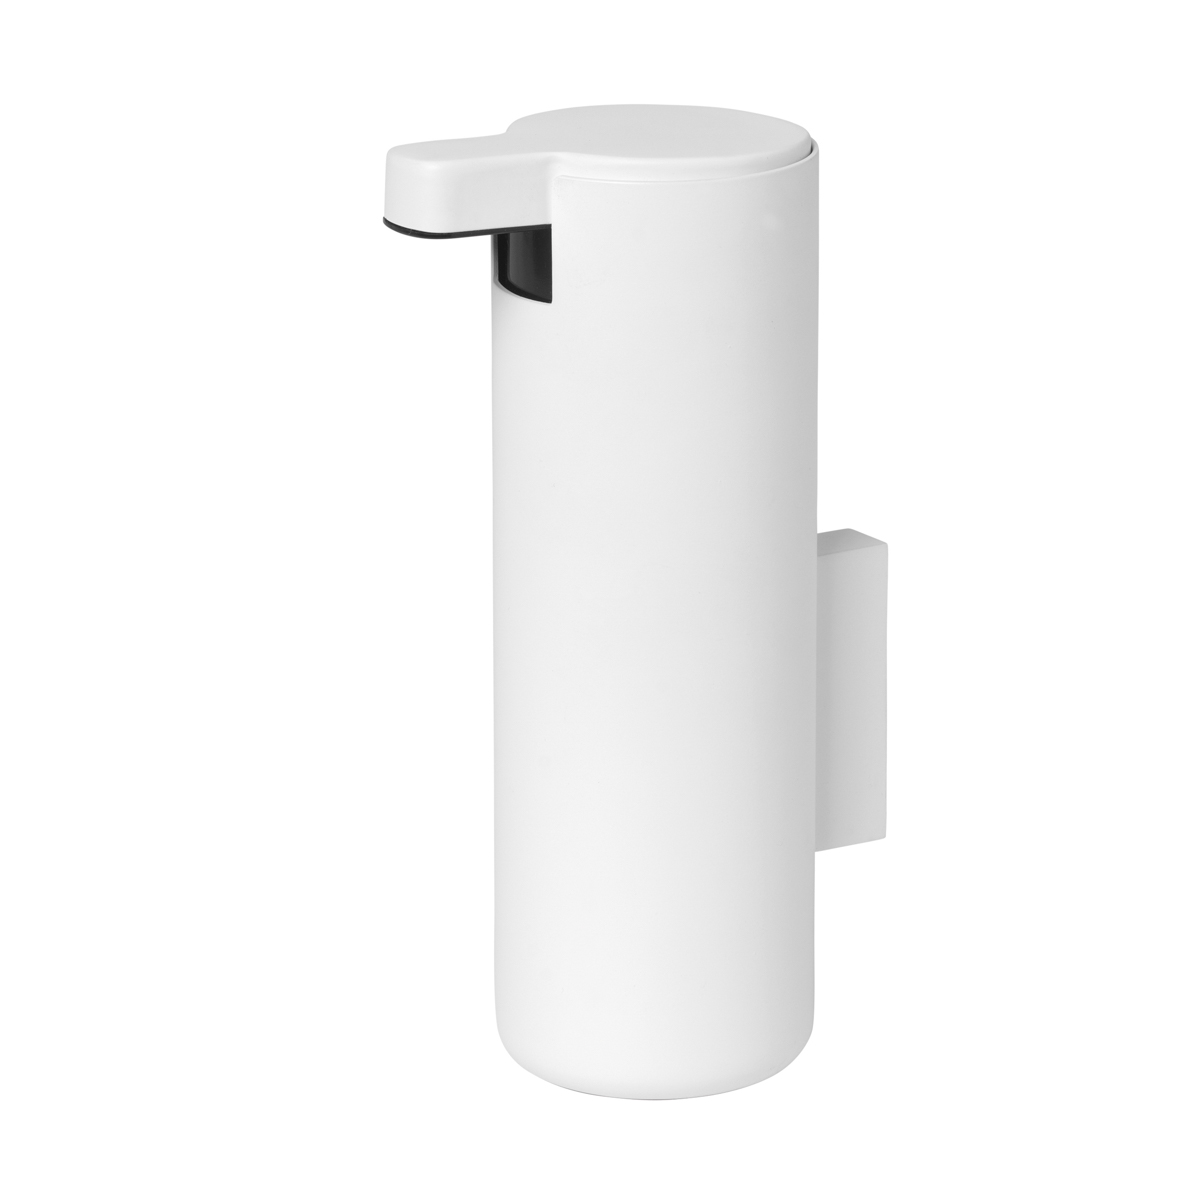 Seifenspender -MODO- White mit Wandmontage 165 ml, Ø 5,5 cm. Material: Stahl Titanbeschichtet, Gummi, Kunststoff. Von Blomus.